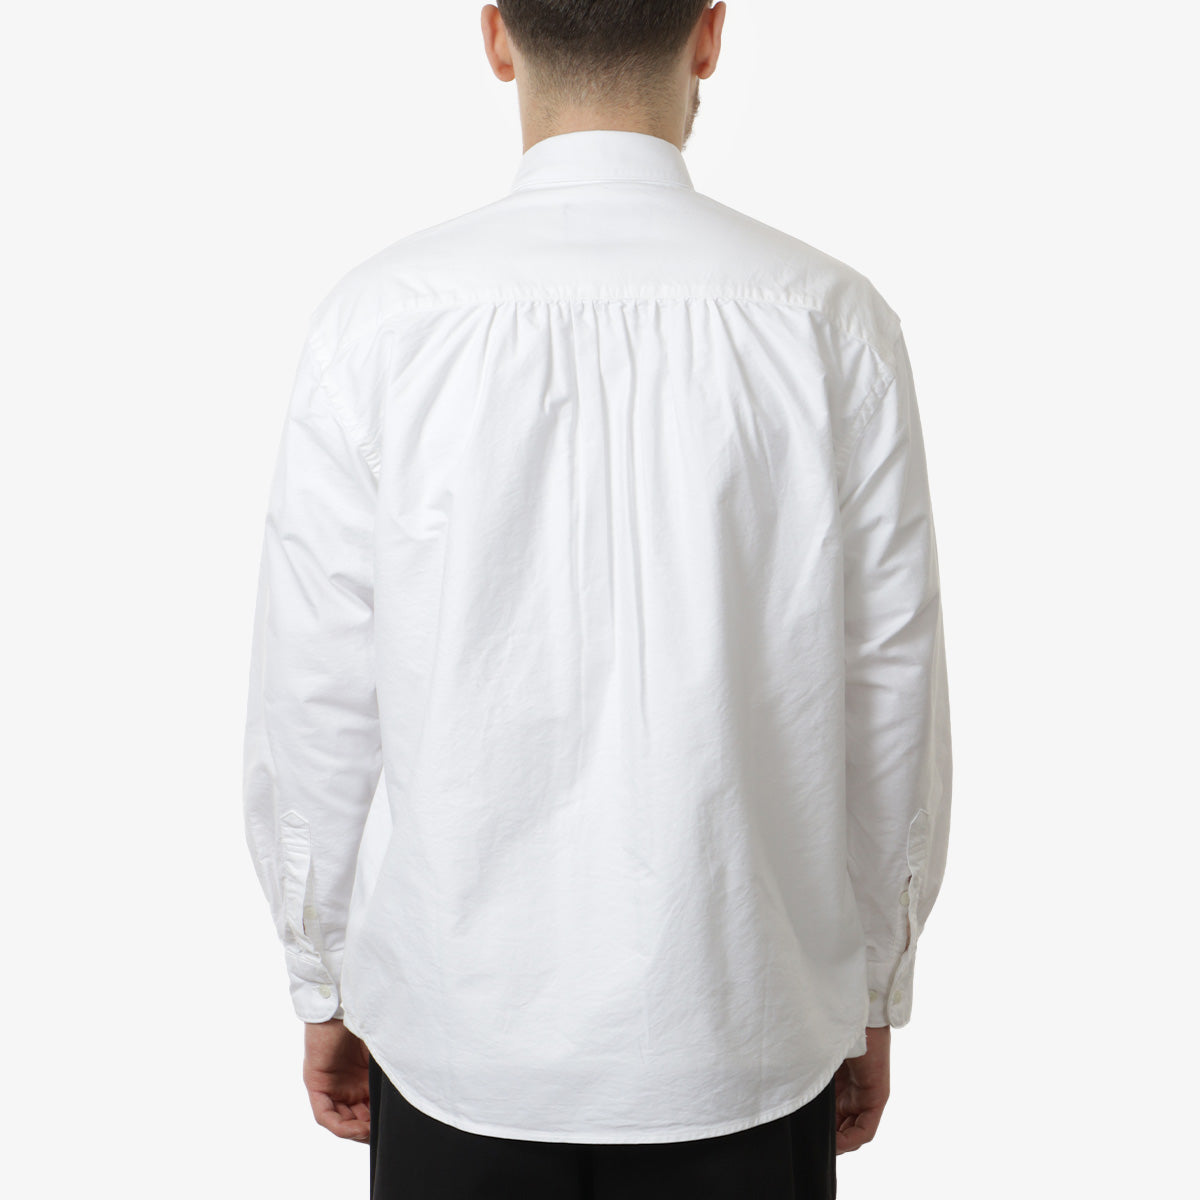 FrizmWORKS Cigarette Pocket Chambray Shirt, White, Detail Shot 3